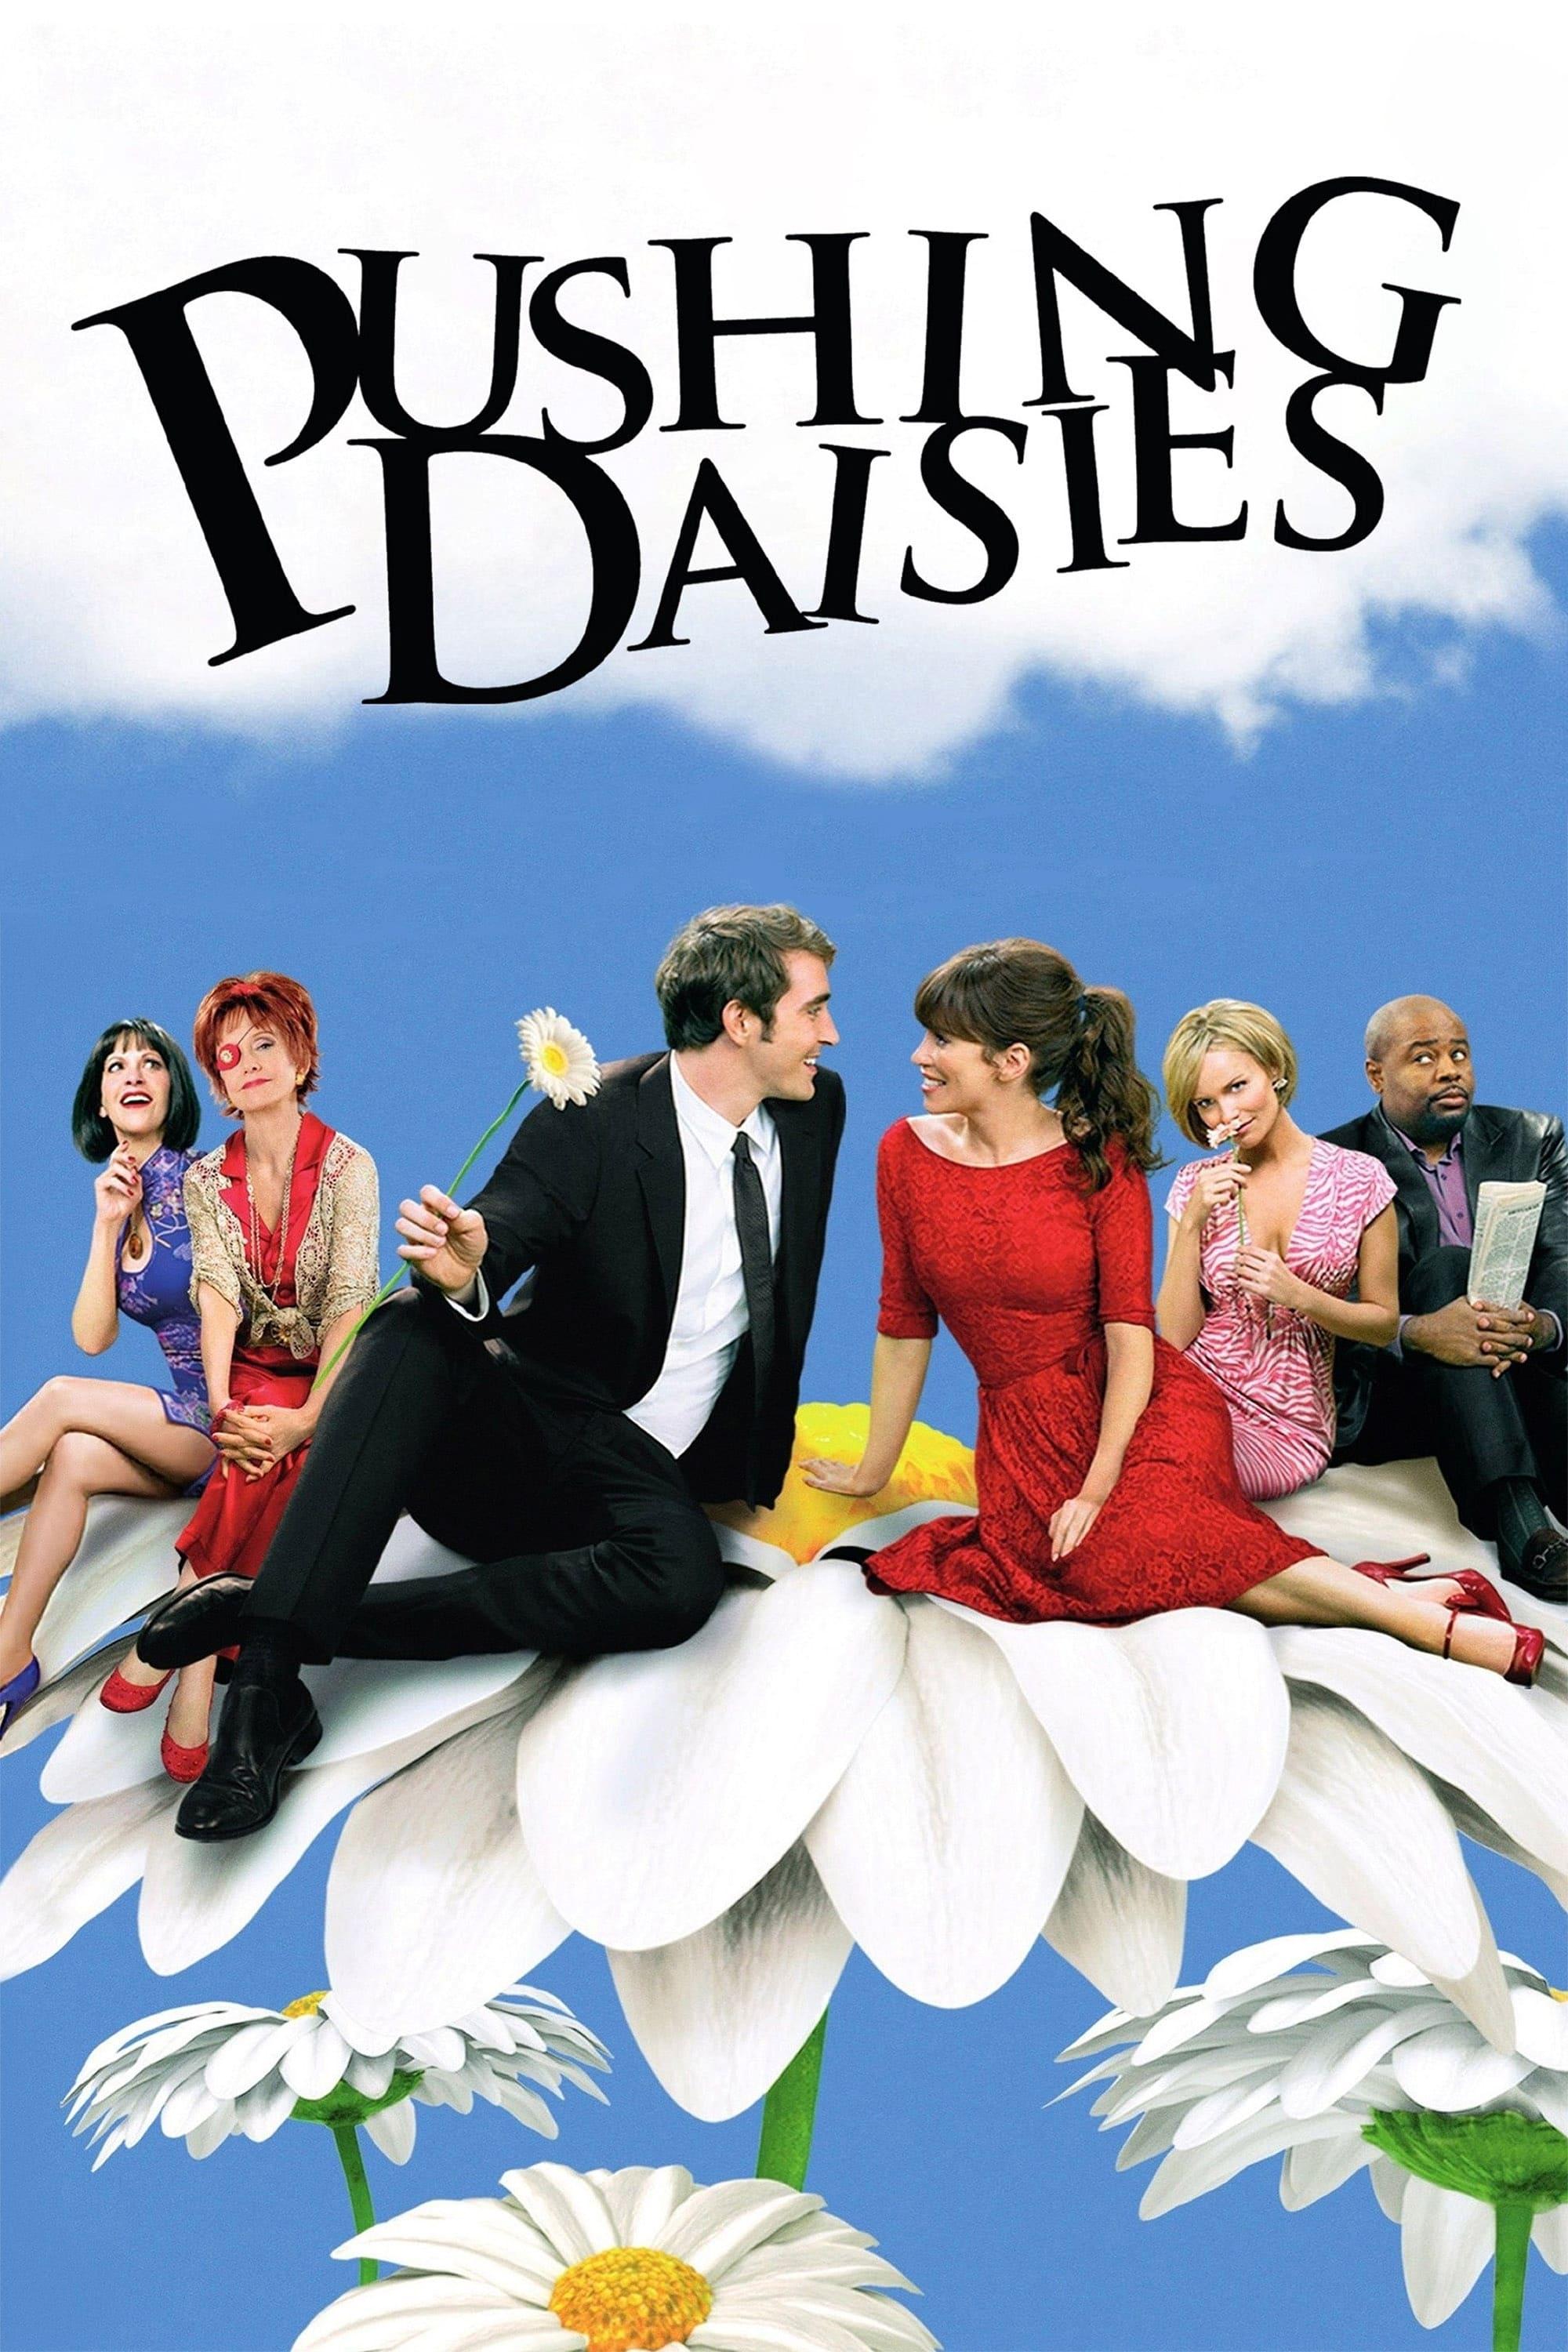 Pushing Daisies poster